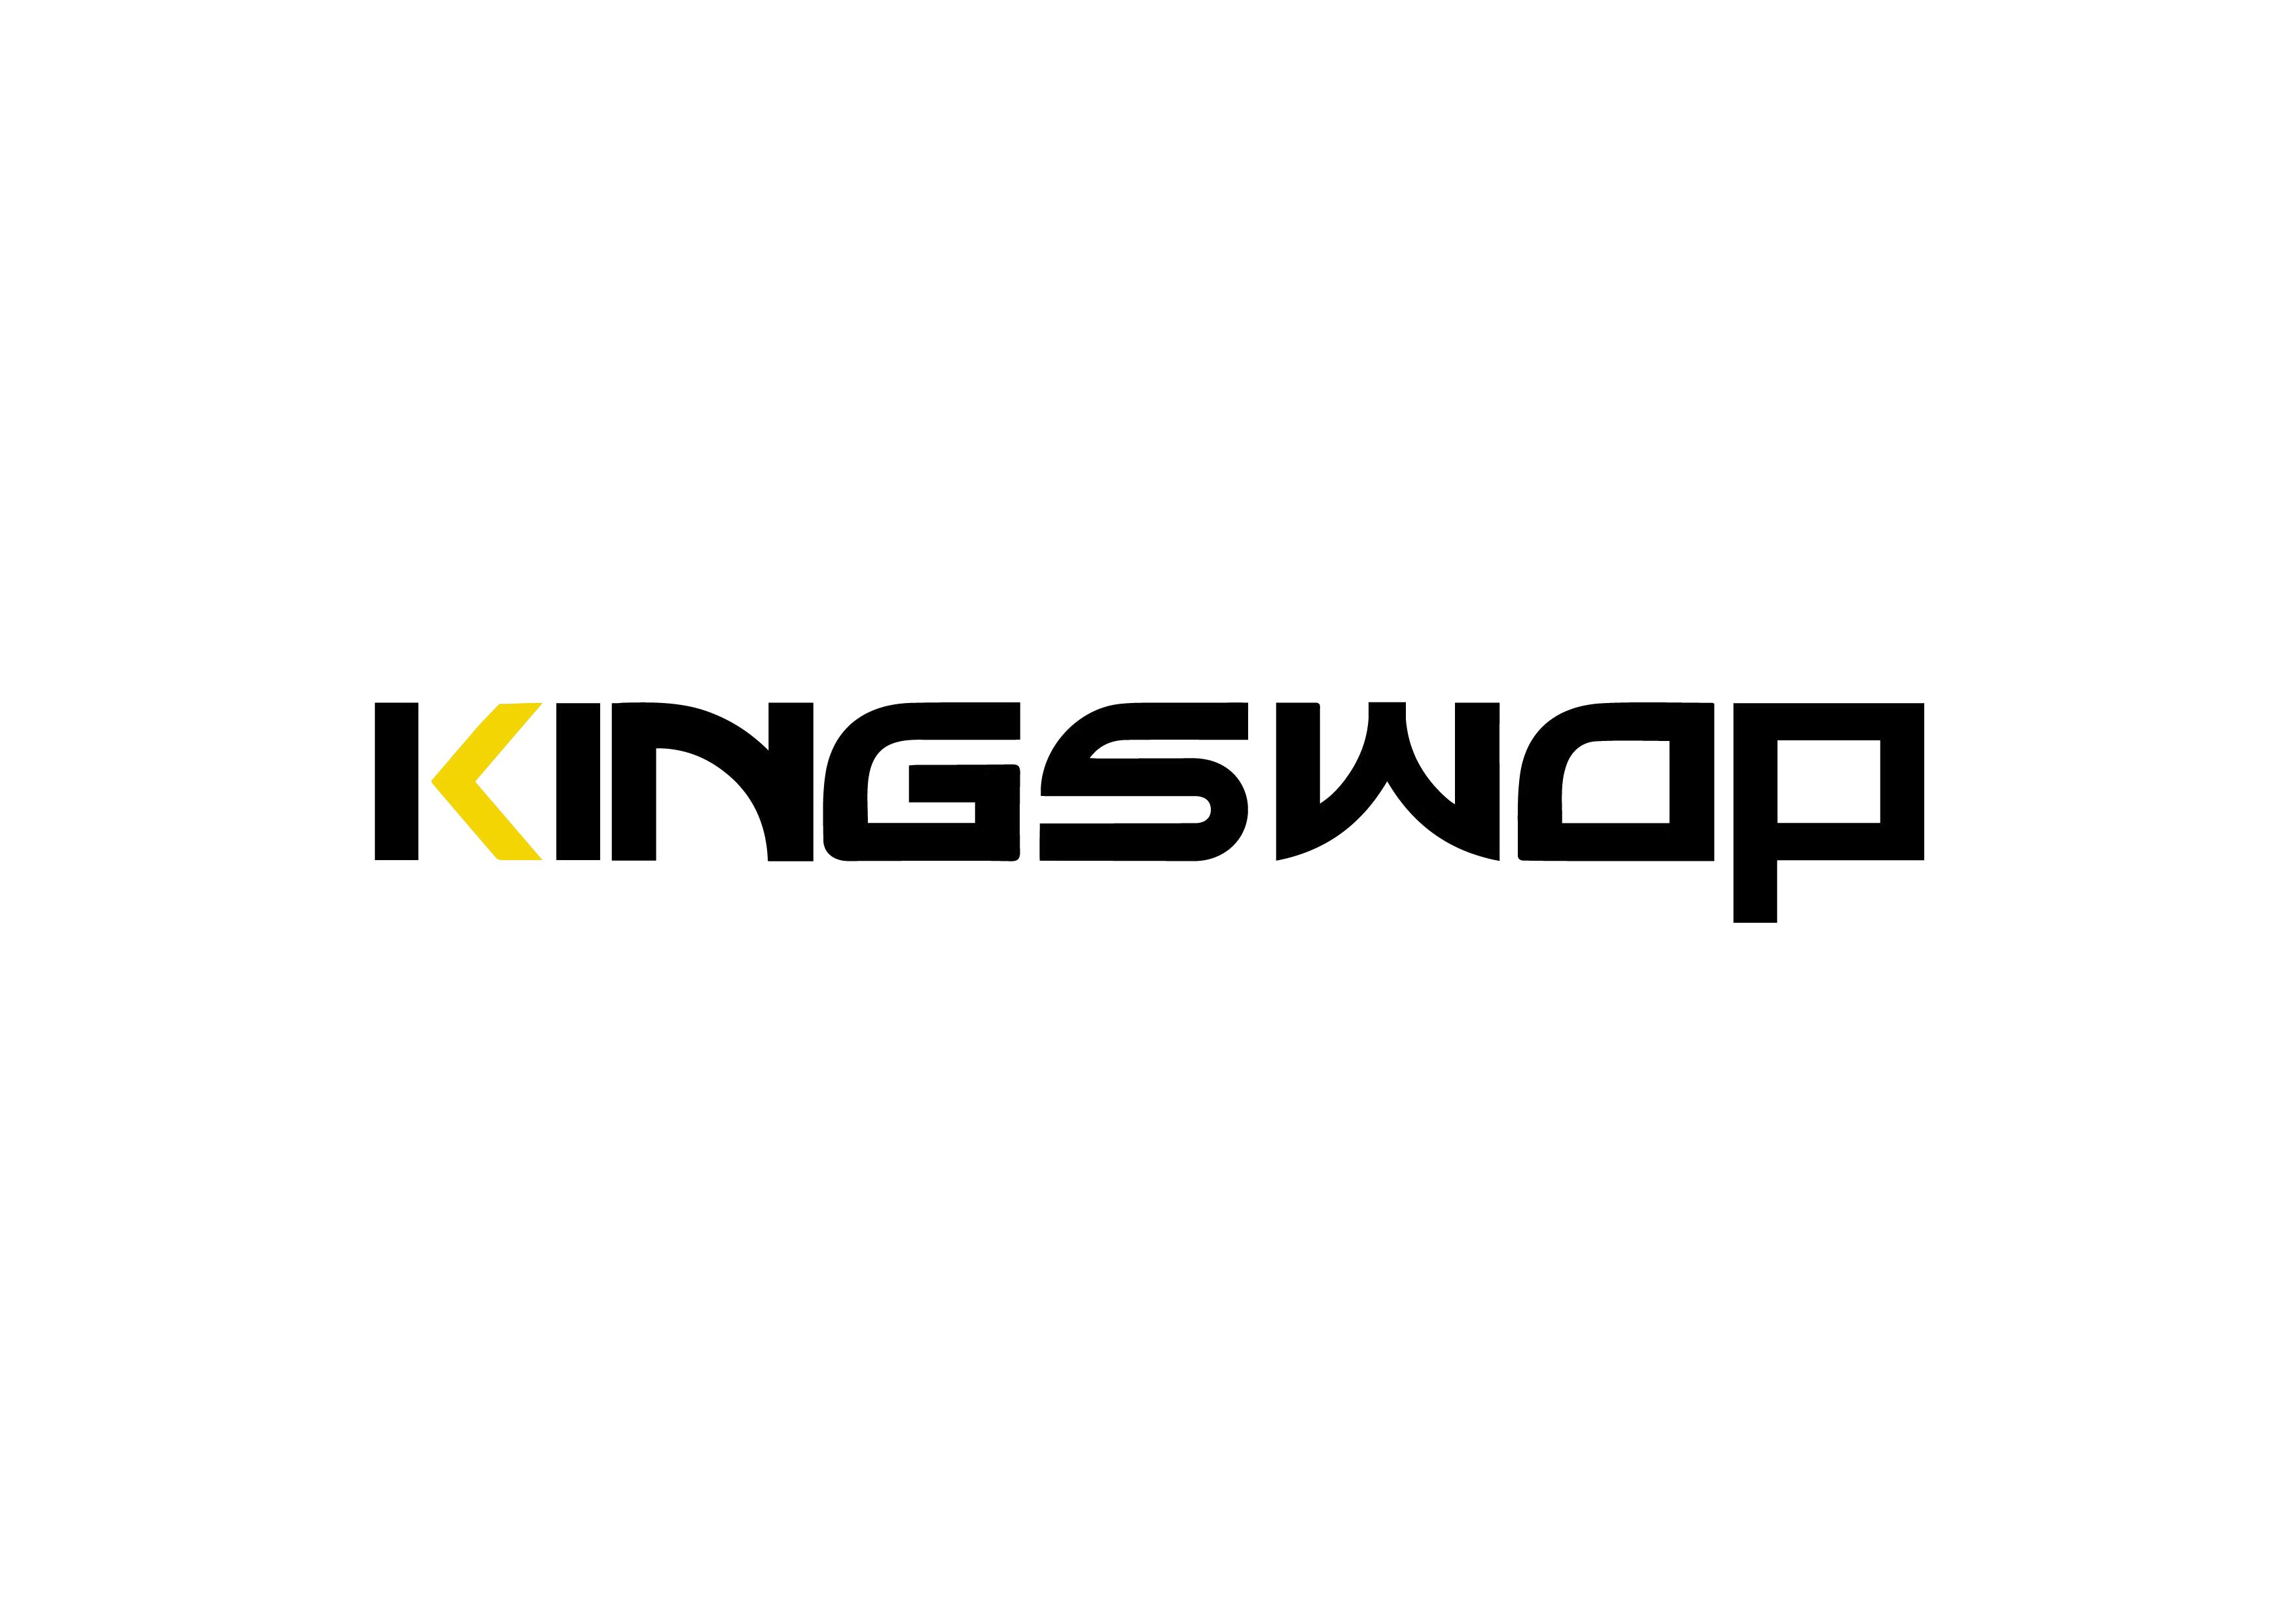 KingSwap